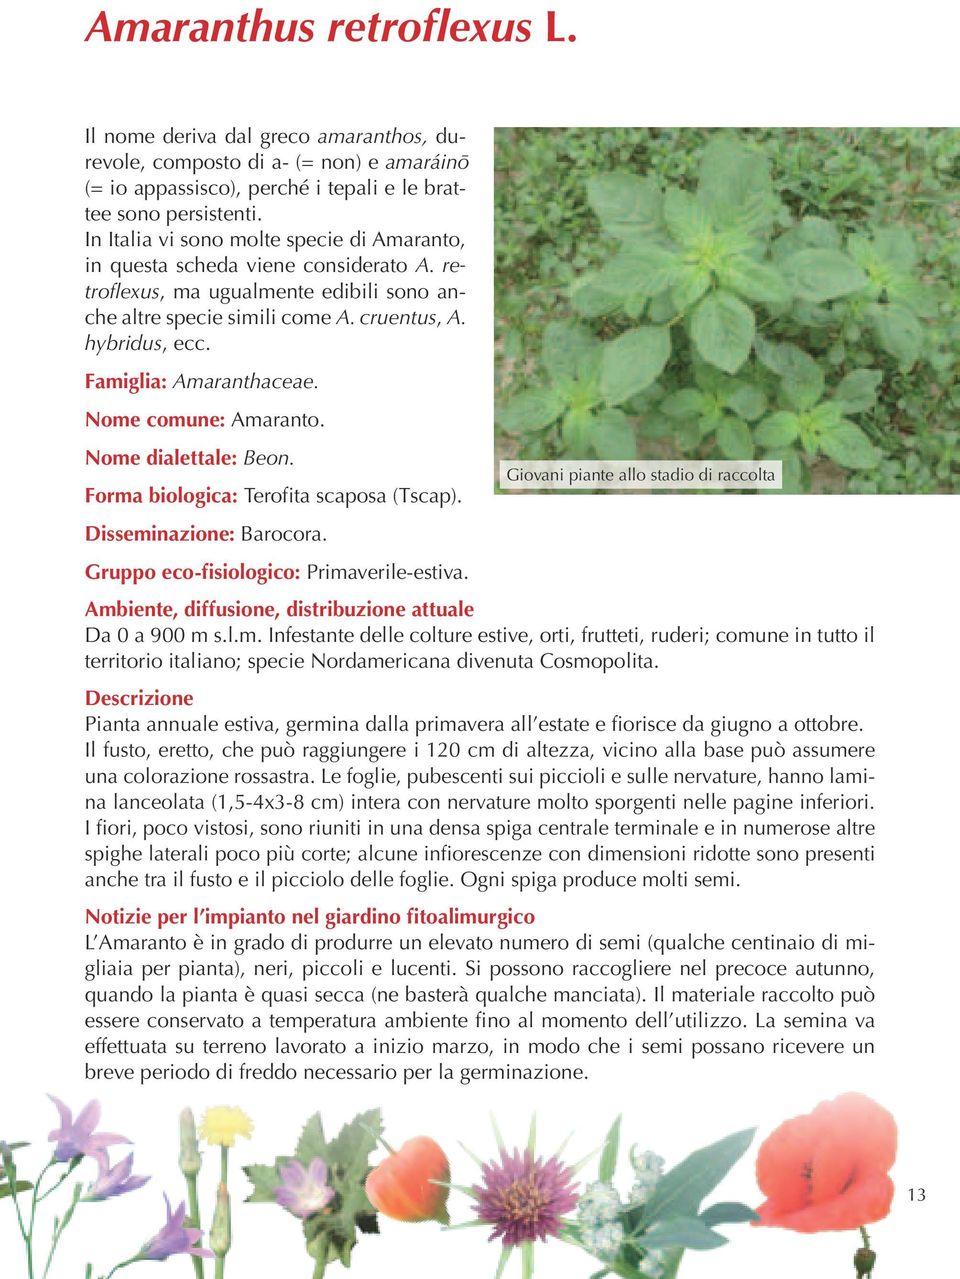 Famiglia: Amaranthaceae. Nome comune: Amaranto. Nome dialettale: Beon. Forma biologica: Terofita scaposa (Tscap). Disseminazione: Barocora.